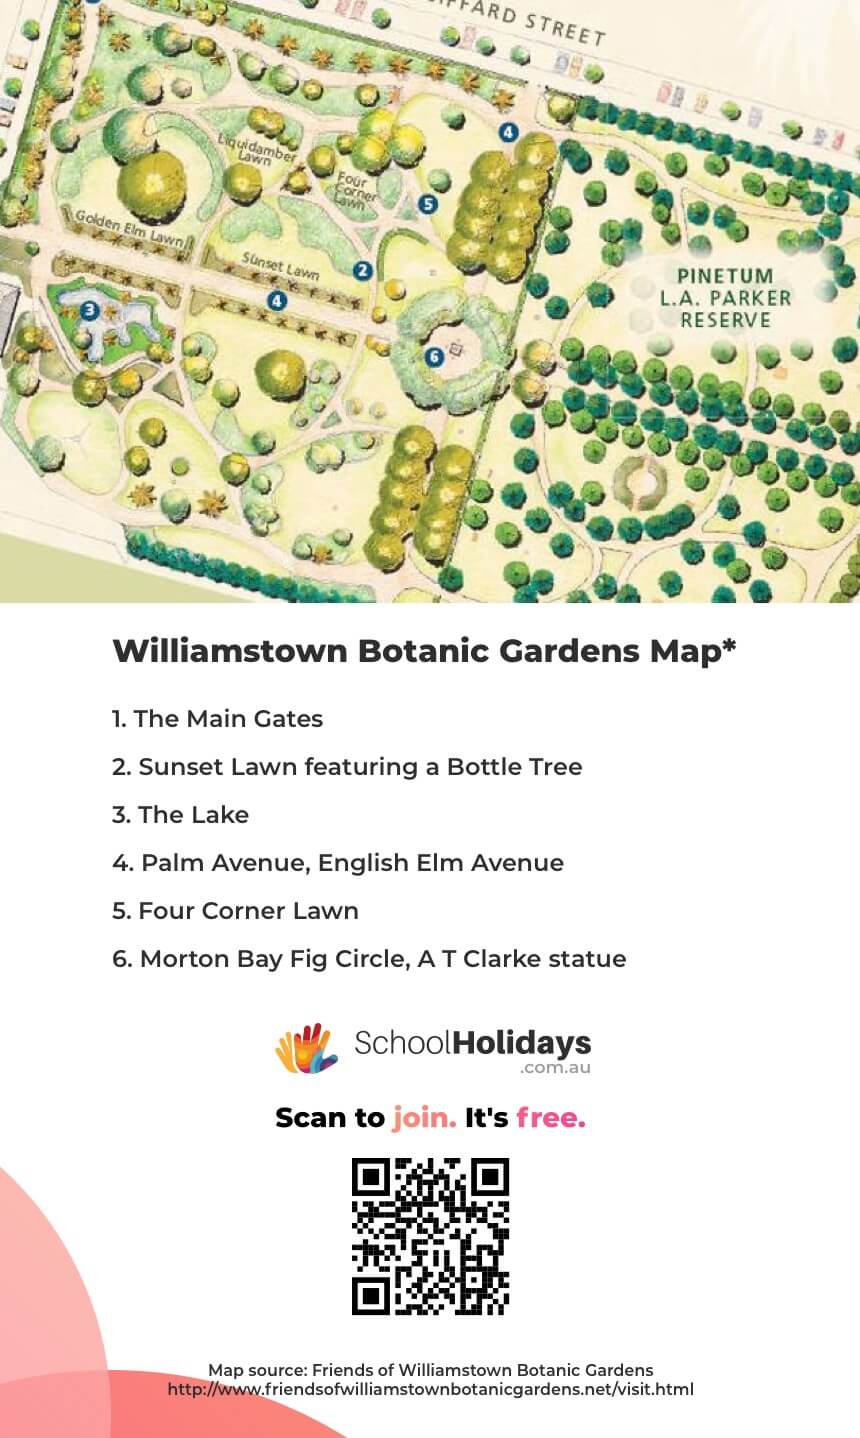 Williamstown Botanic Garden Map (Friends of Williamstown Botanic Gardens).